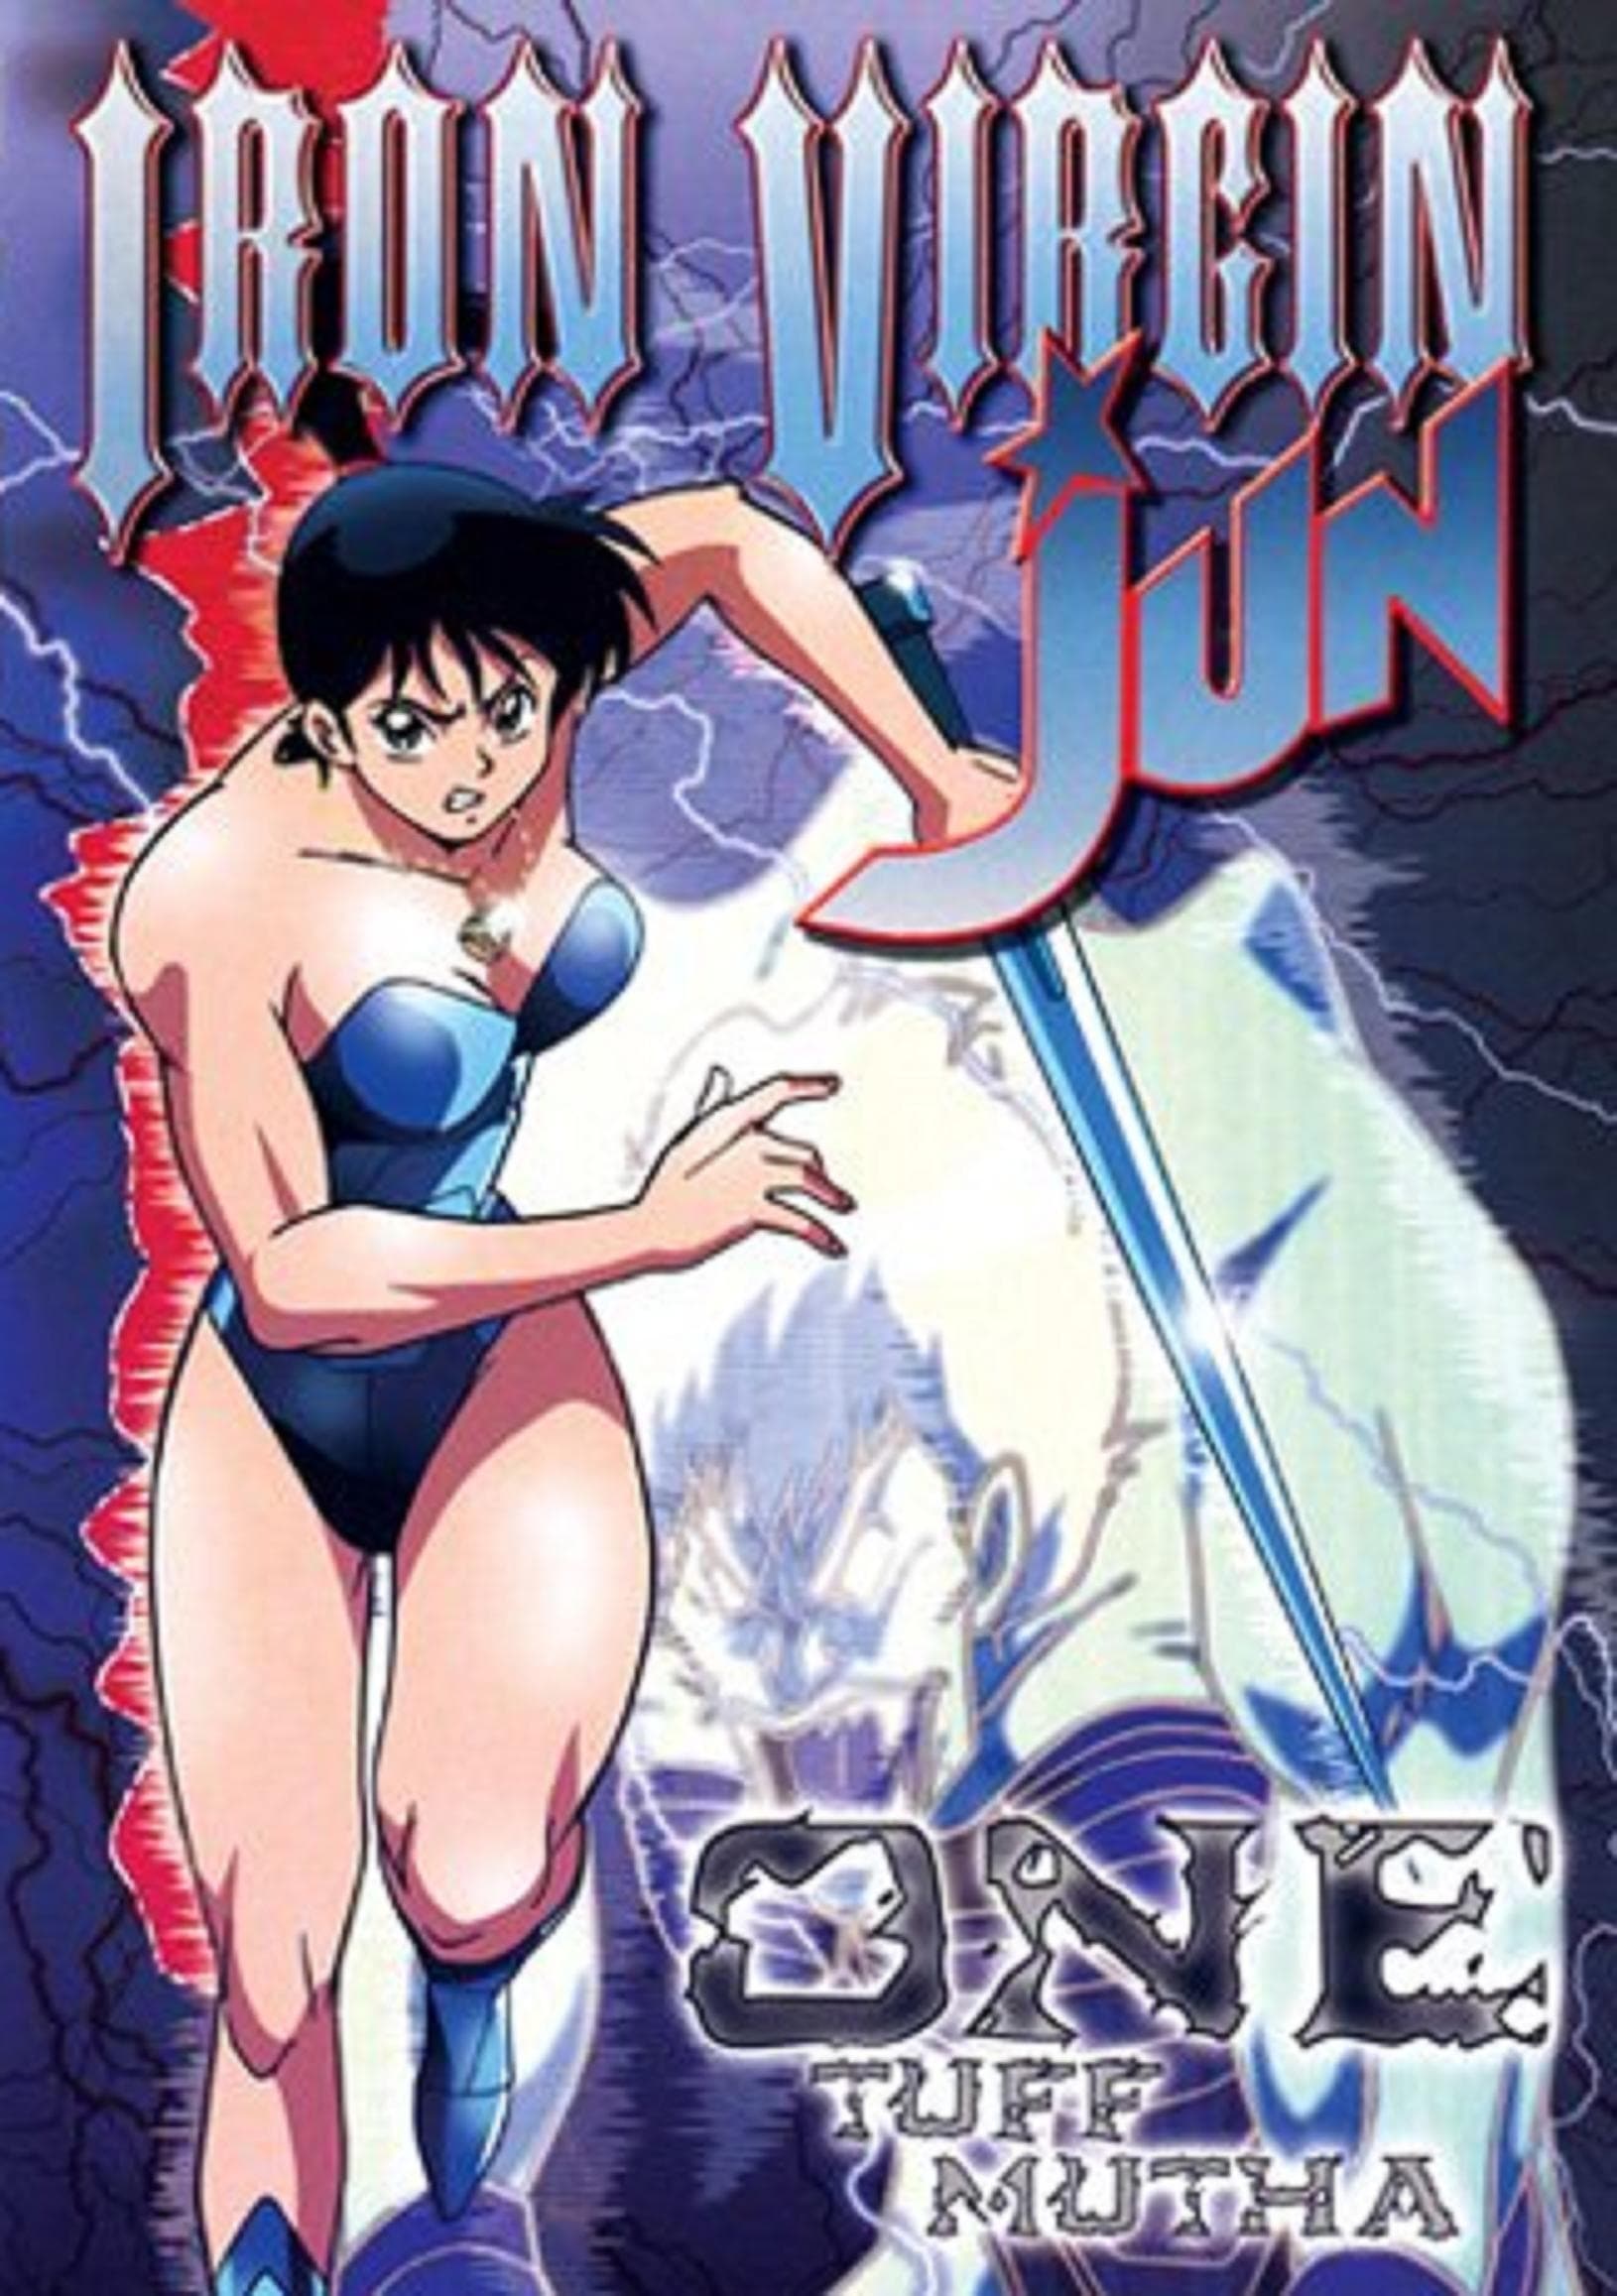 Iron Virgin Jun (1992)